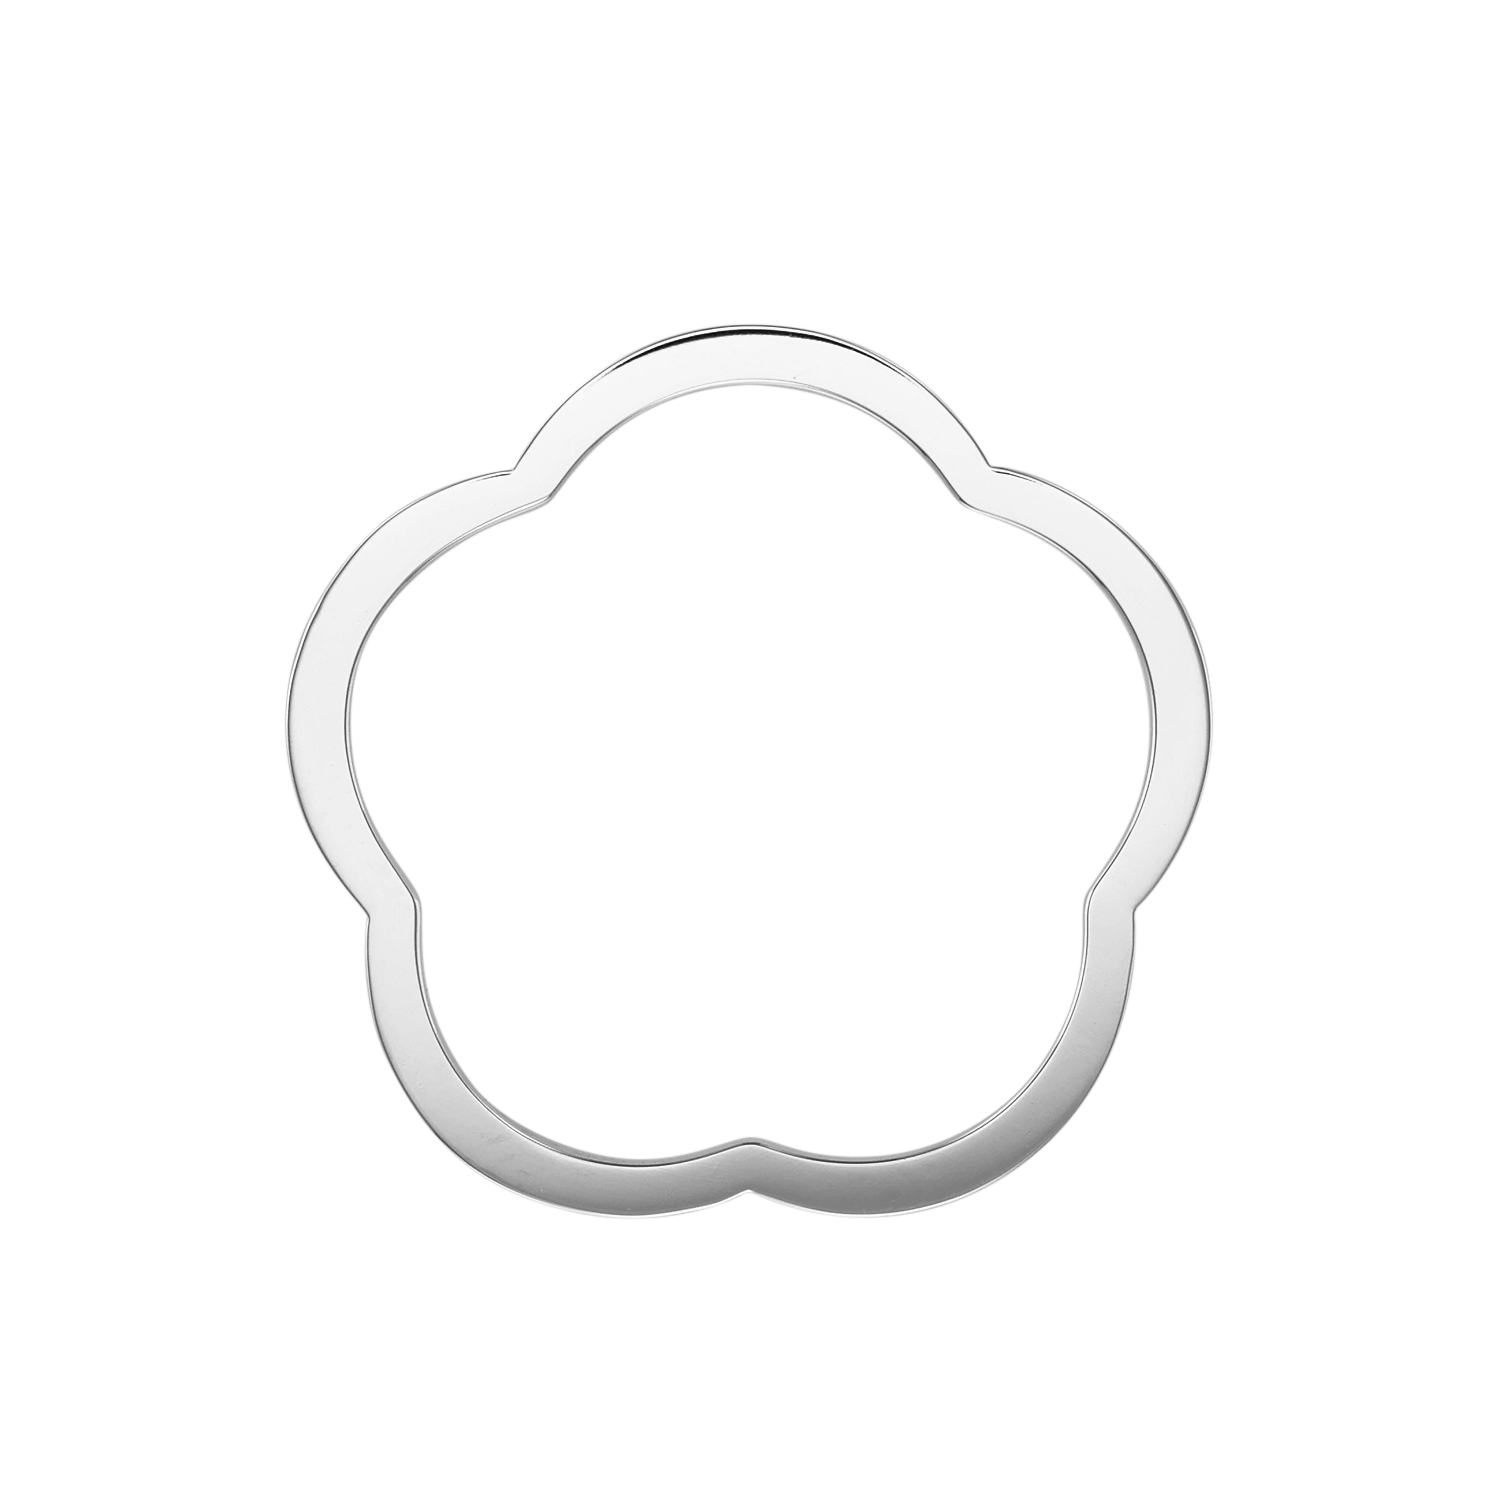 【ホワイトゴールド】リング [フラワーシルエット]/Flower Silhouette Ring